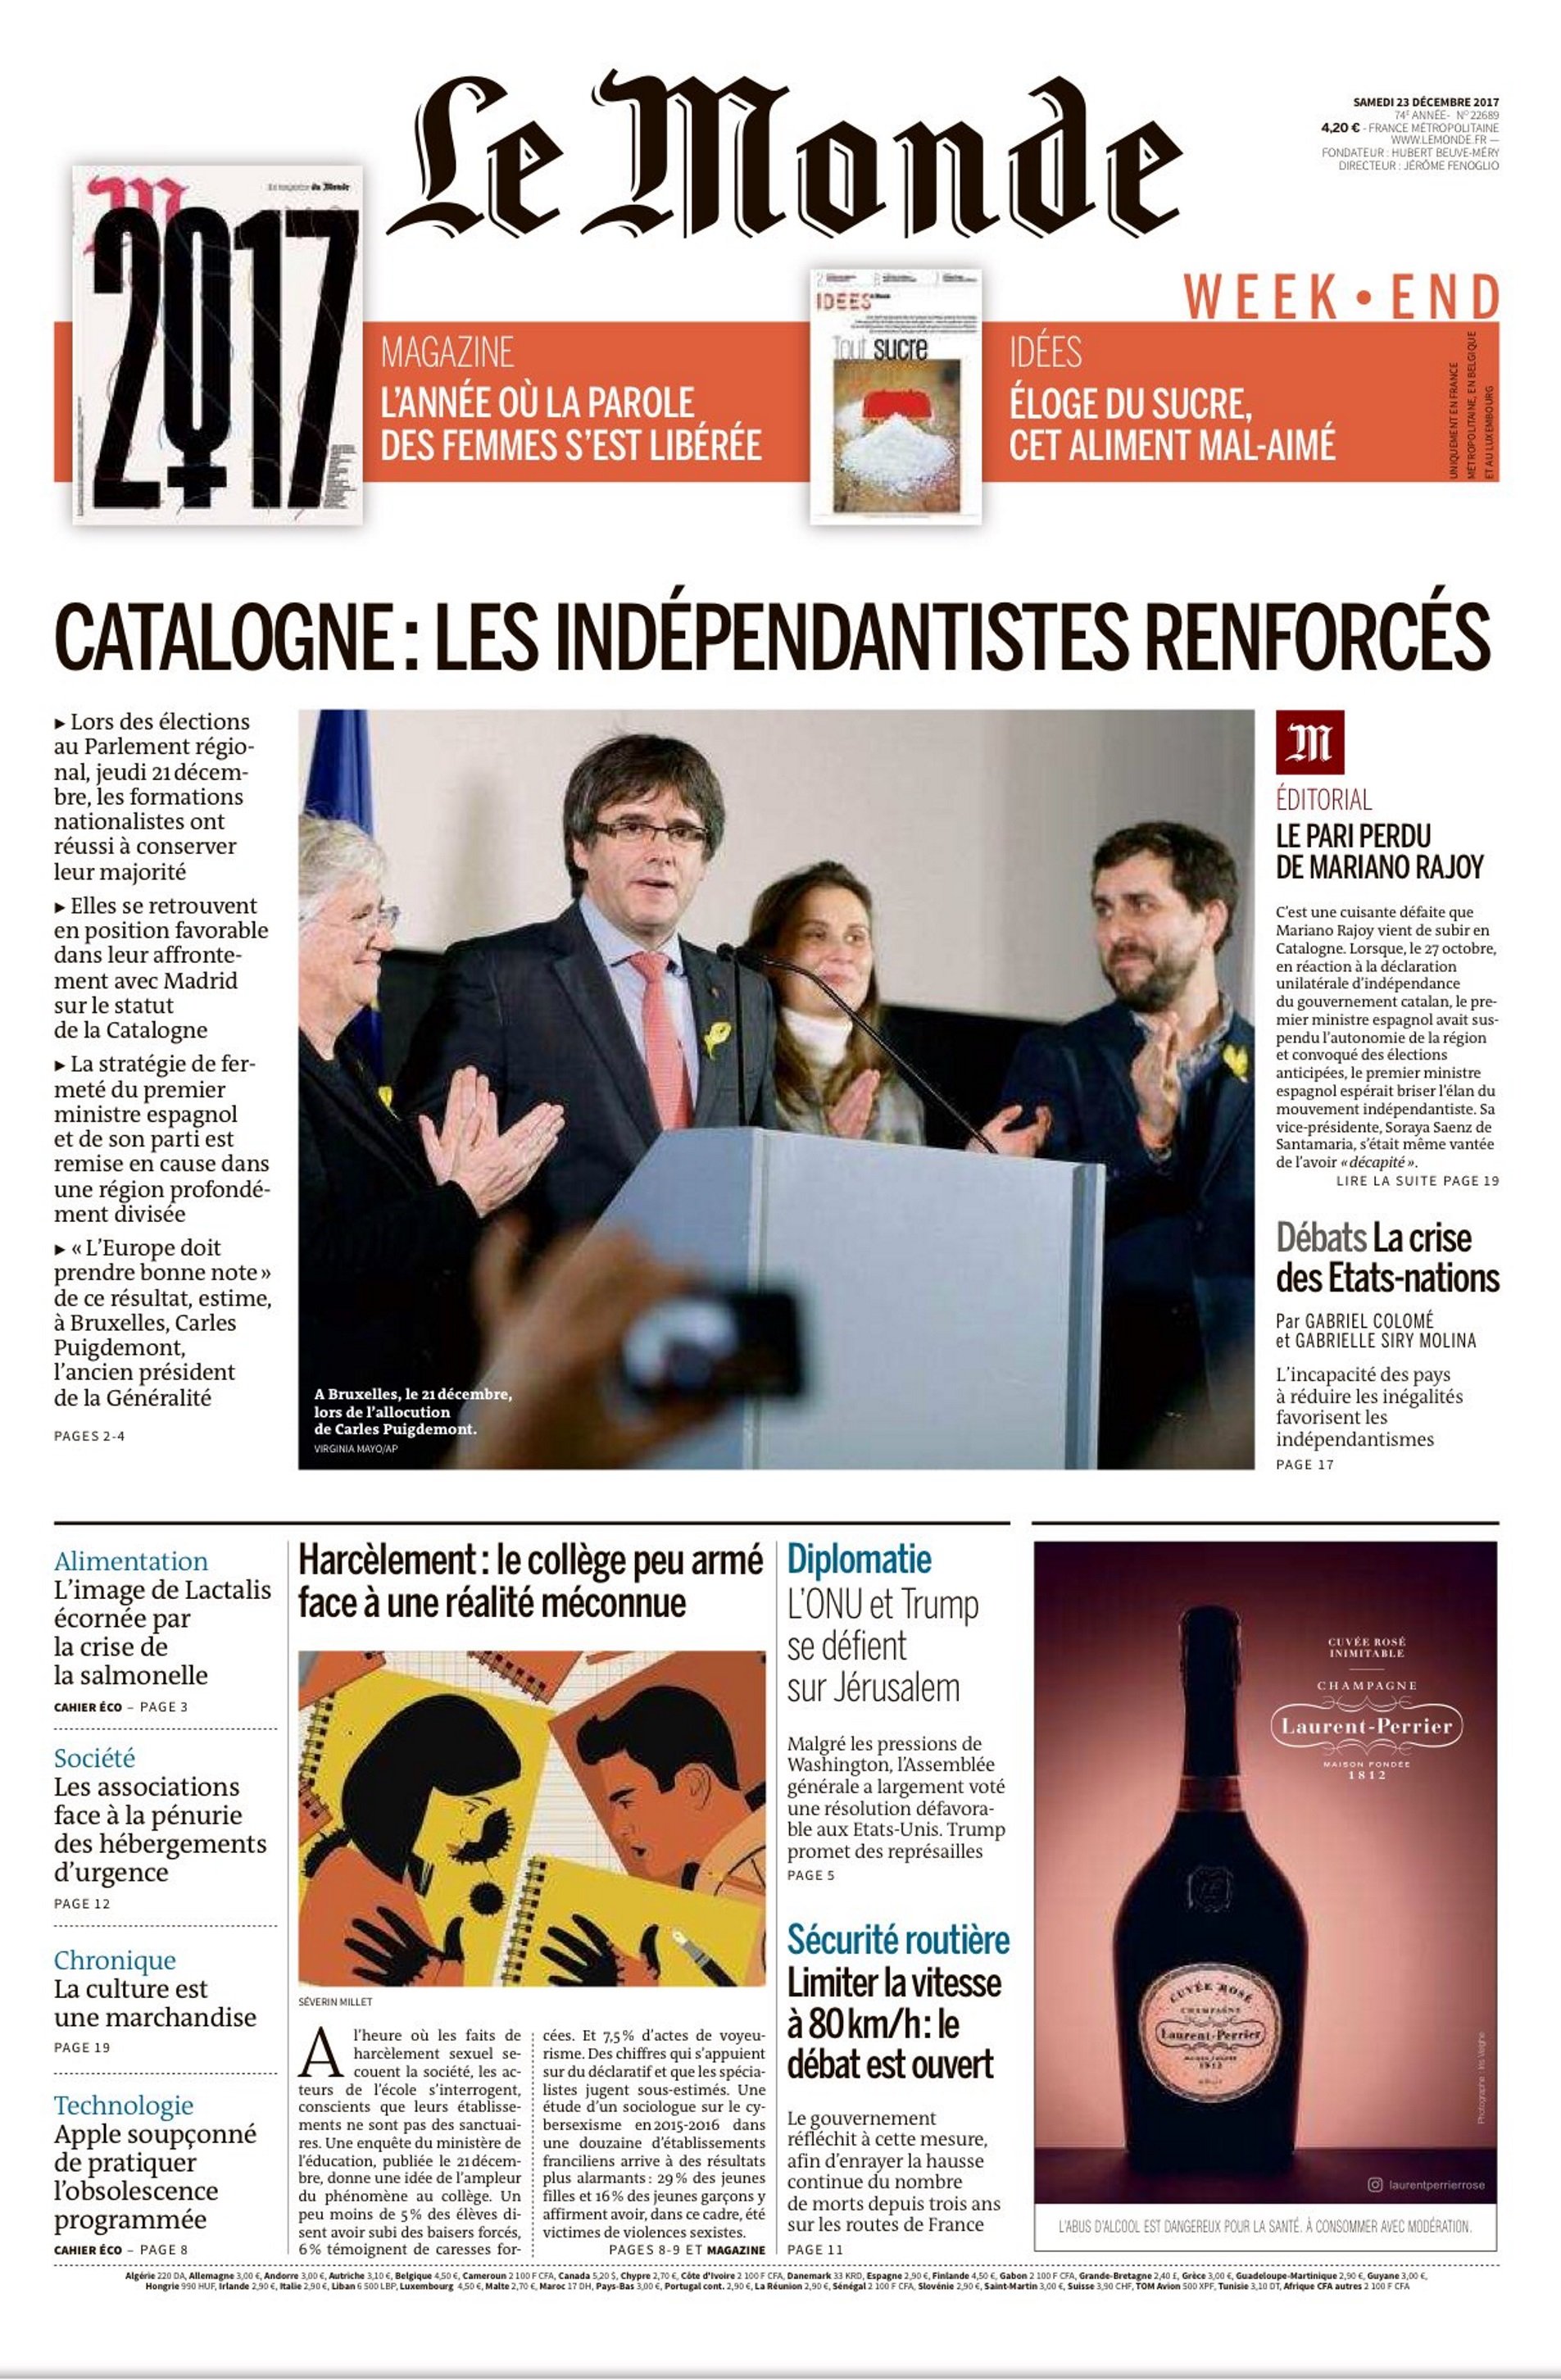 Le Monde canta les quaranta a Rajoy en un dur editorial